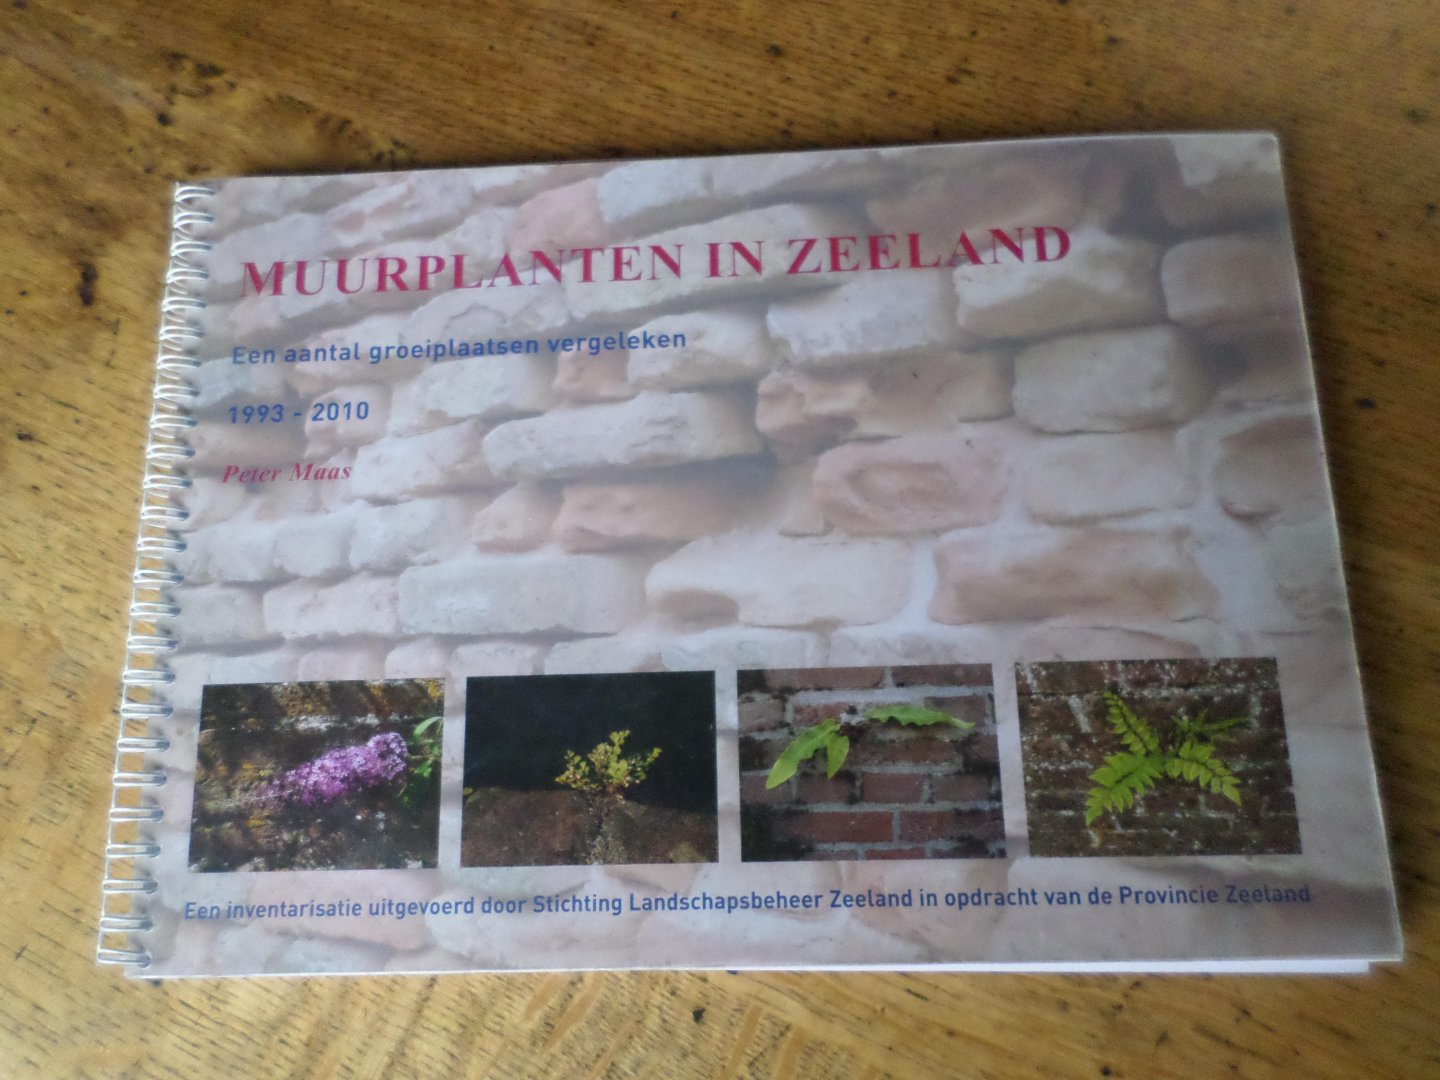 Maas, Peter - Muurplanten in Zeeland